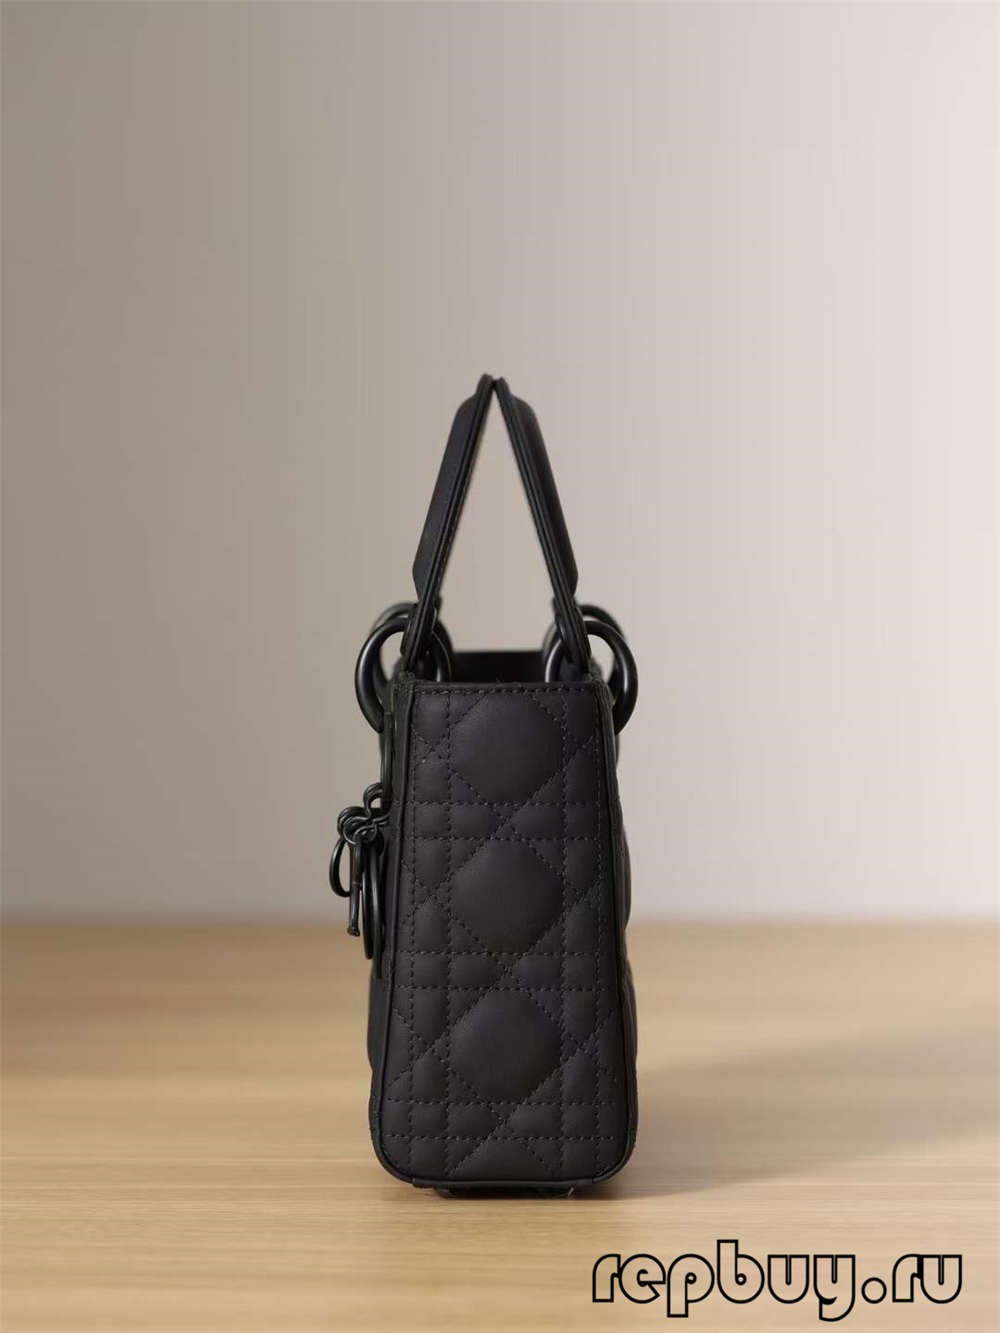 LADY DIOR Mini Black Top Replica Handbag Matte Cowhide (2022 Special)-Best Quality Fake designer Bag Review, Replica designer bag ru